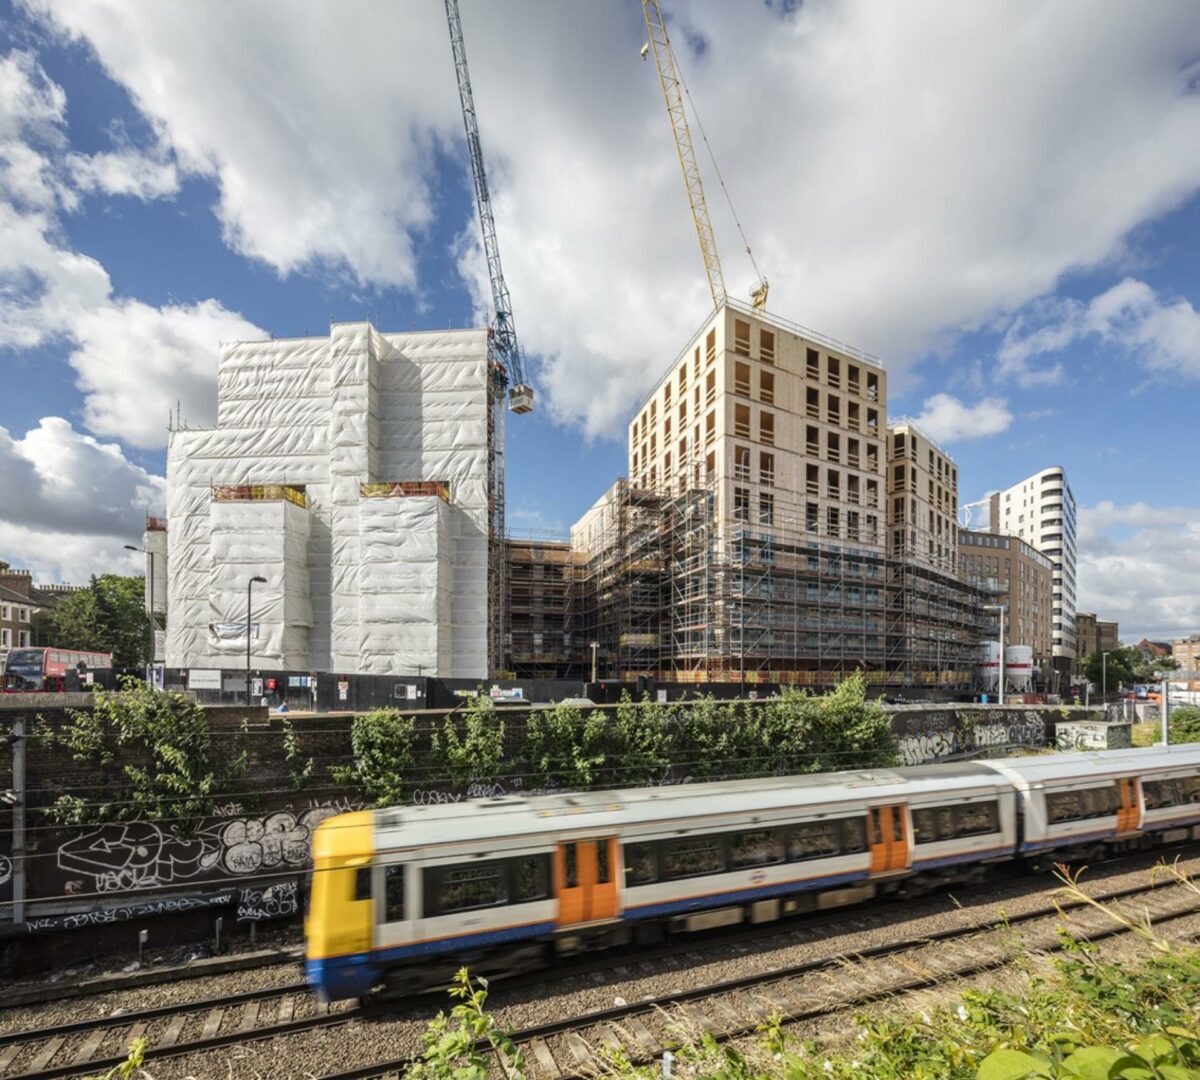 Dalston Lane-byggeri i London. Her blev træmoduler valgt på grund af kort leveringstid og lav vægt. Derfor kan der bygges højere ovenpå undergrundsbanen. Pressefoto: Daniel Shearing.